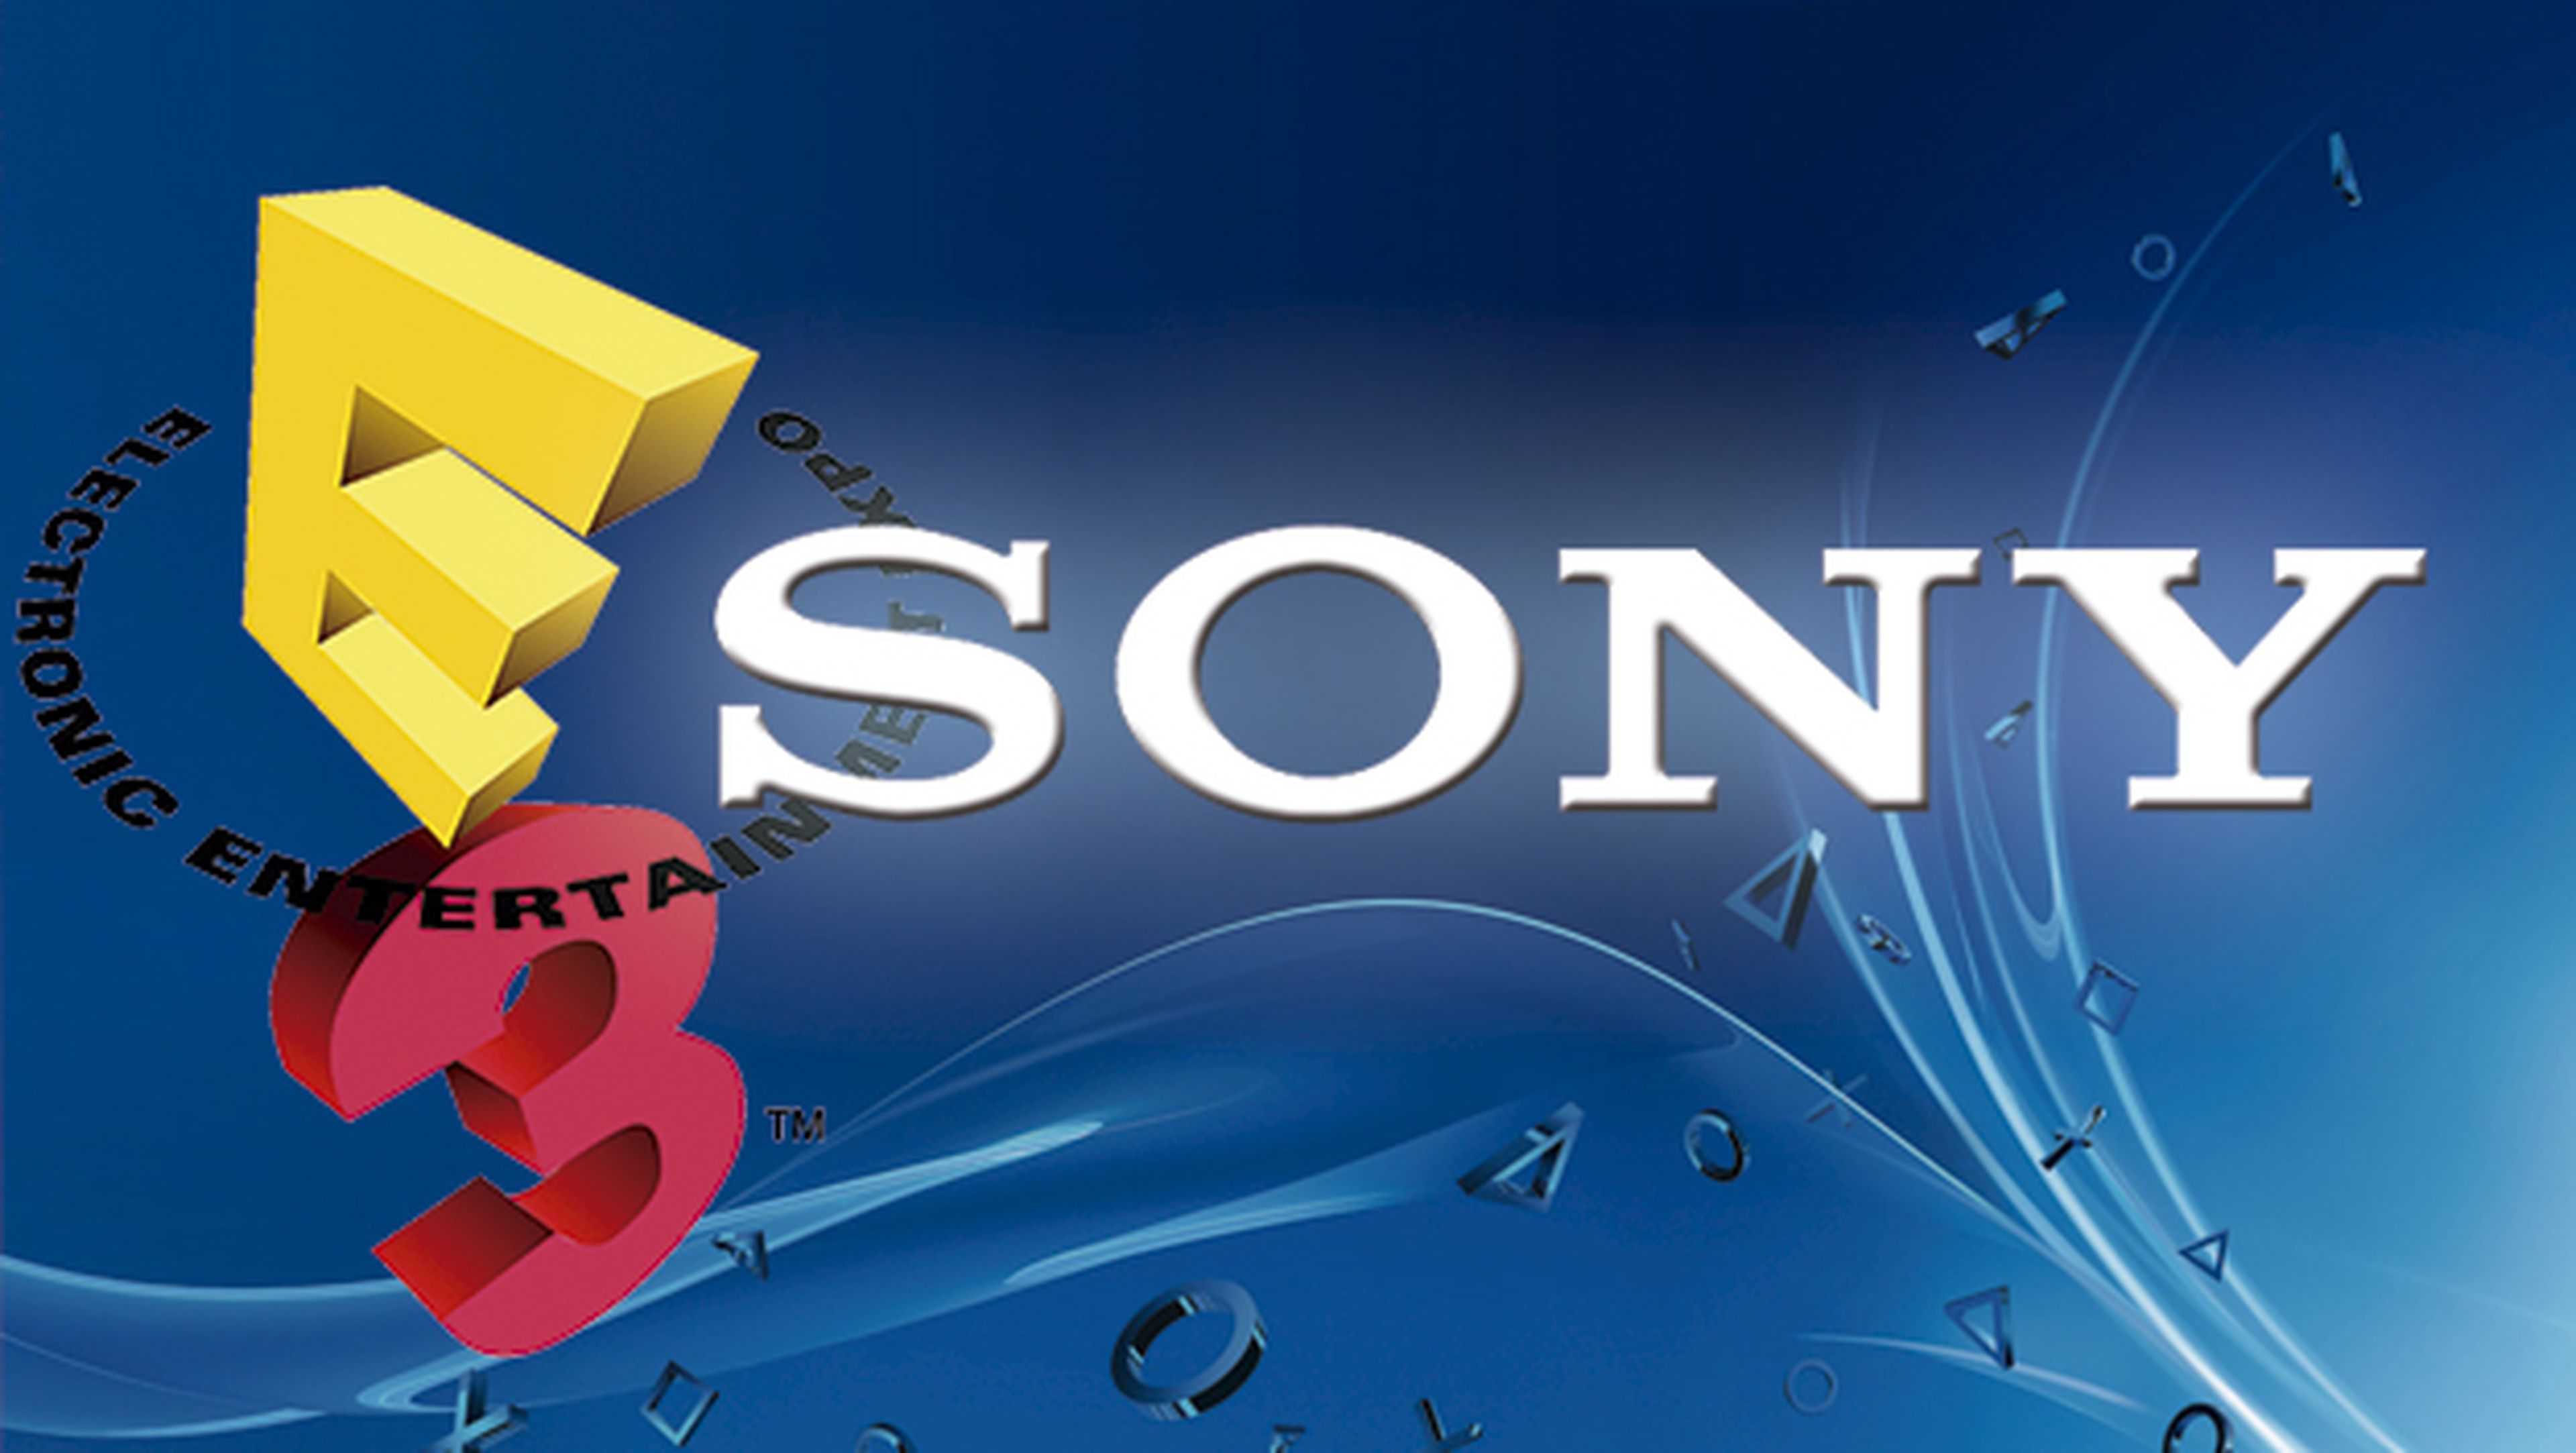 Ver streaming en directo la conferencia de Sony en E3 2015